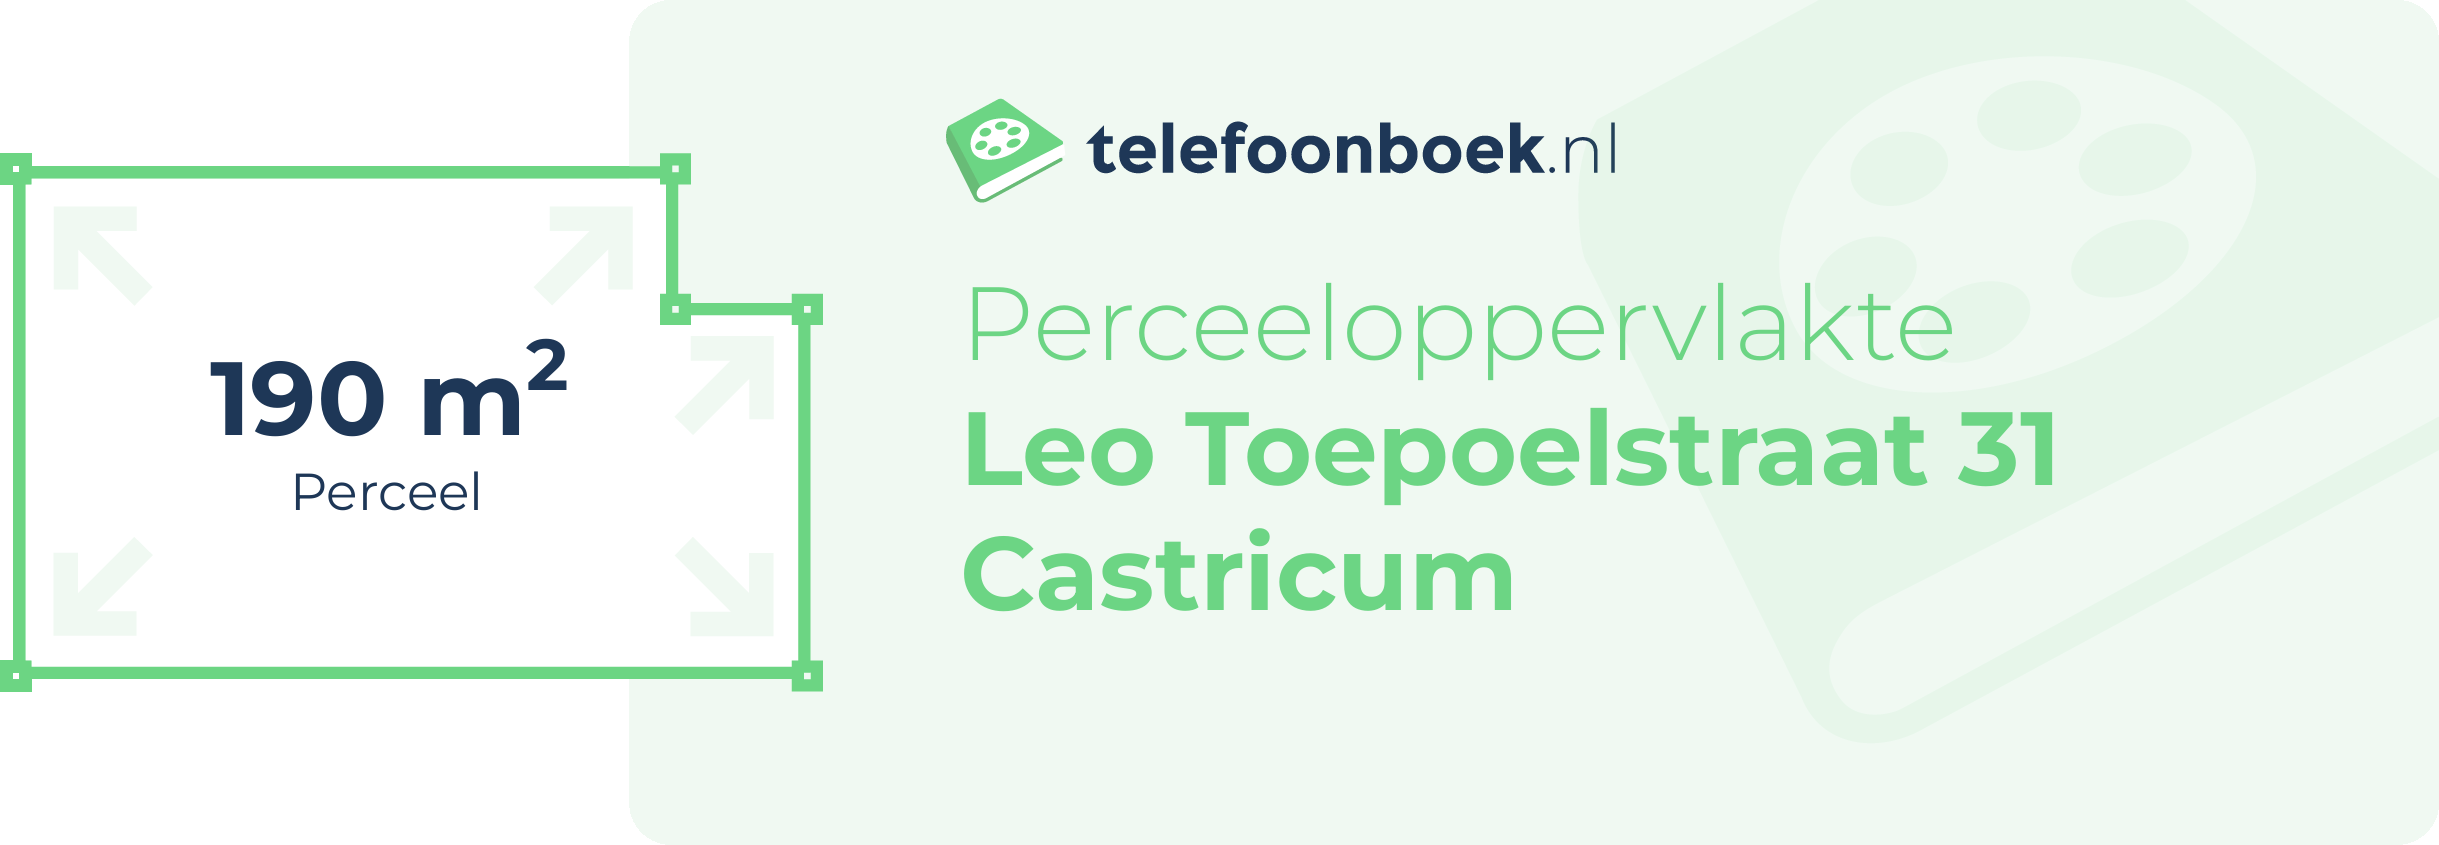 Perceeloppervlakte Leo Toepoelstraat 31 Castricum